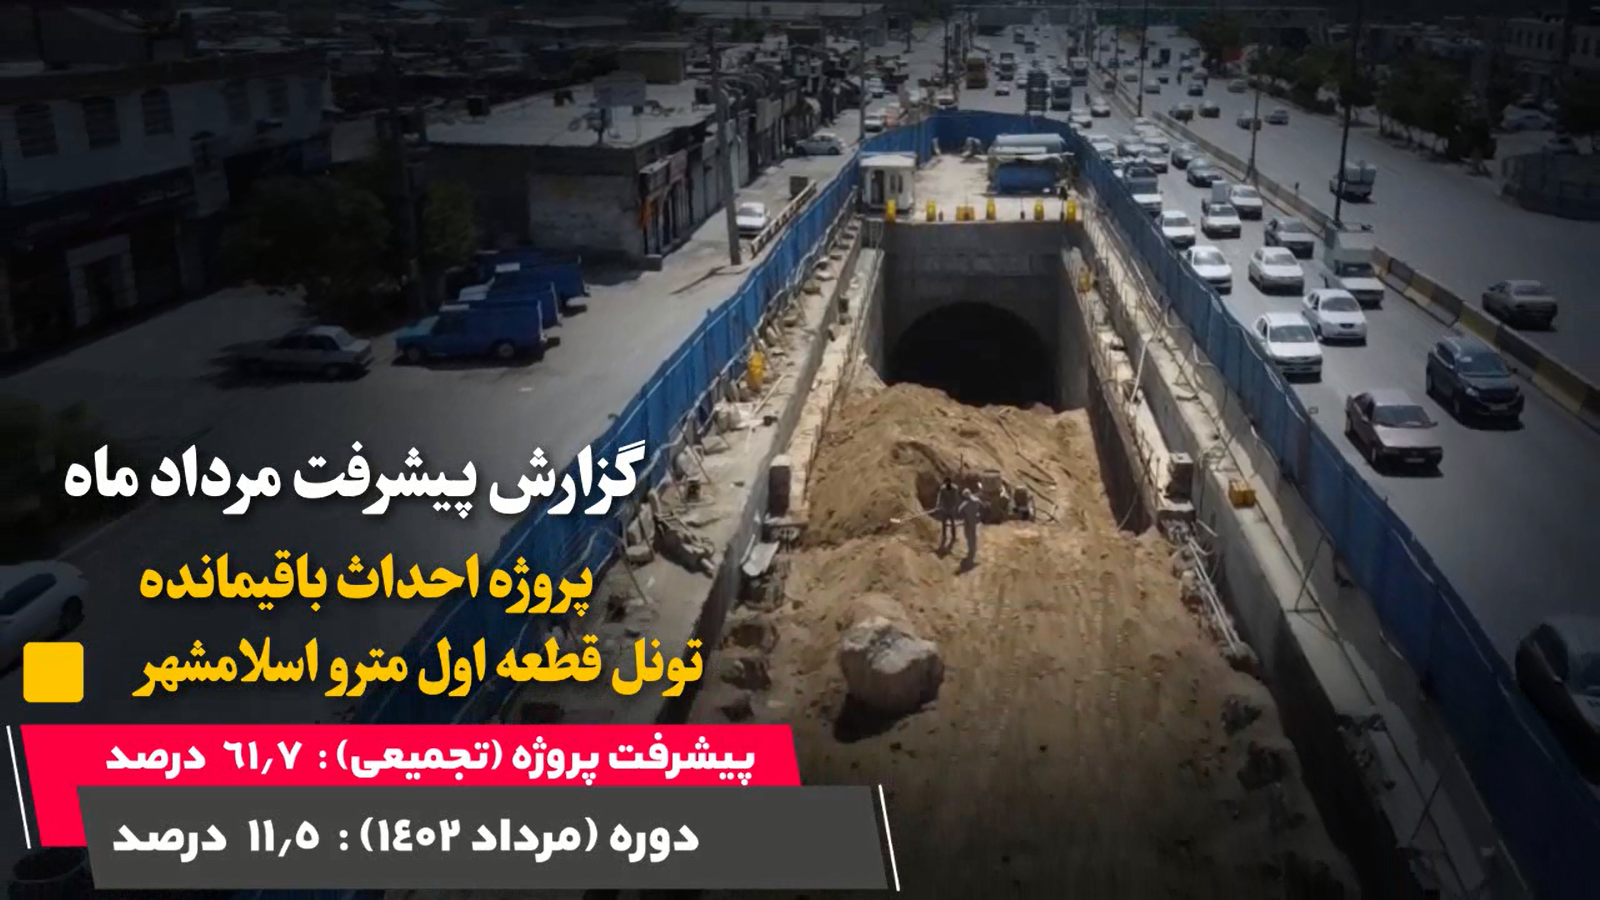 گزارش ماهیانه پیشرفت پروژه احداث باقیمانده تونل قطعه اول مترو اسلامشهر در مرداد ماه: